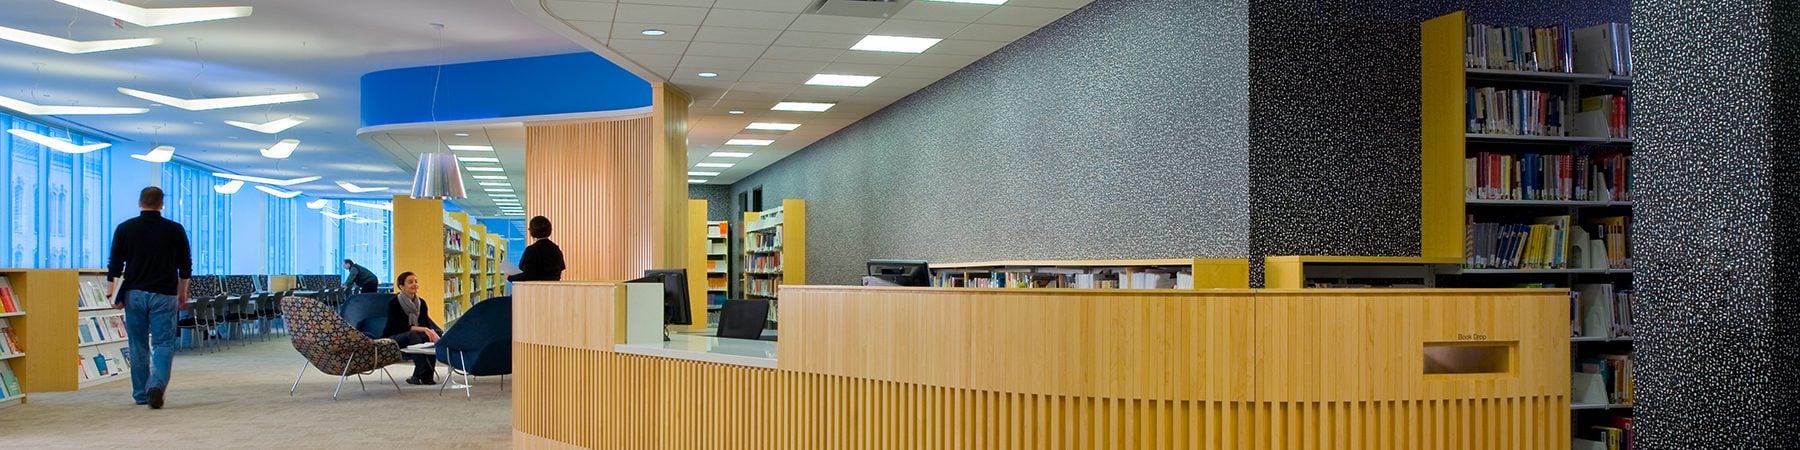 Edward Neisser Library at Erikson Institute